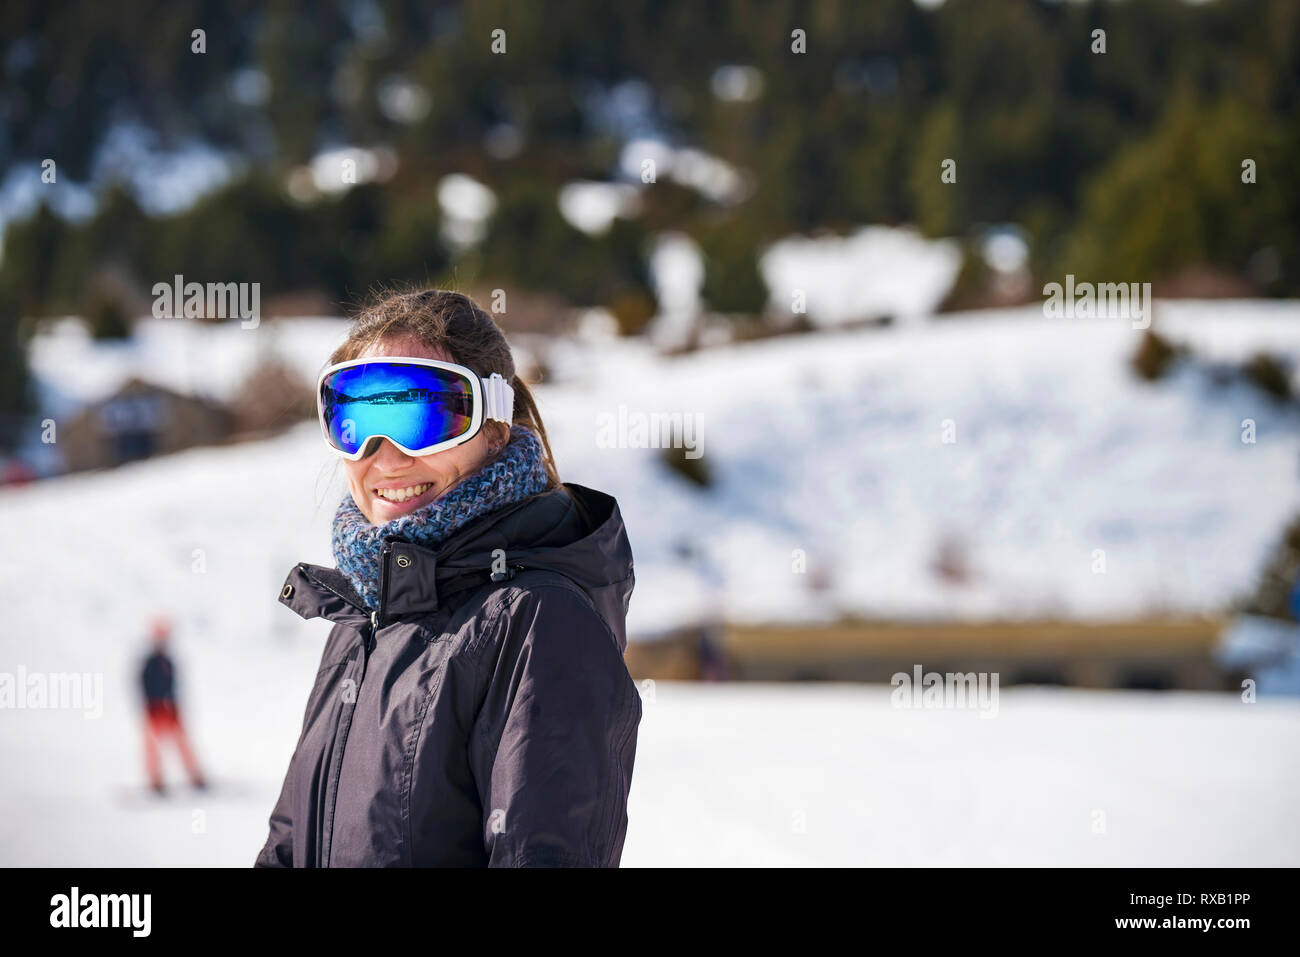 Sonriente Mujer De Esquí Con Gafas De Esquí En Invierno Por La Nieve Fotos,  retratos, imágenes y fotografía de archivo libres de derecho. Image 44899508